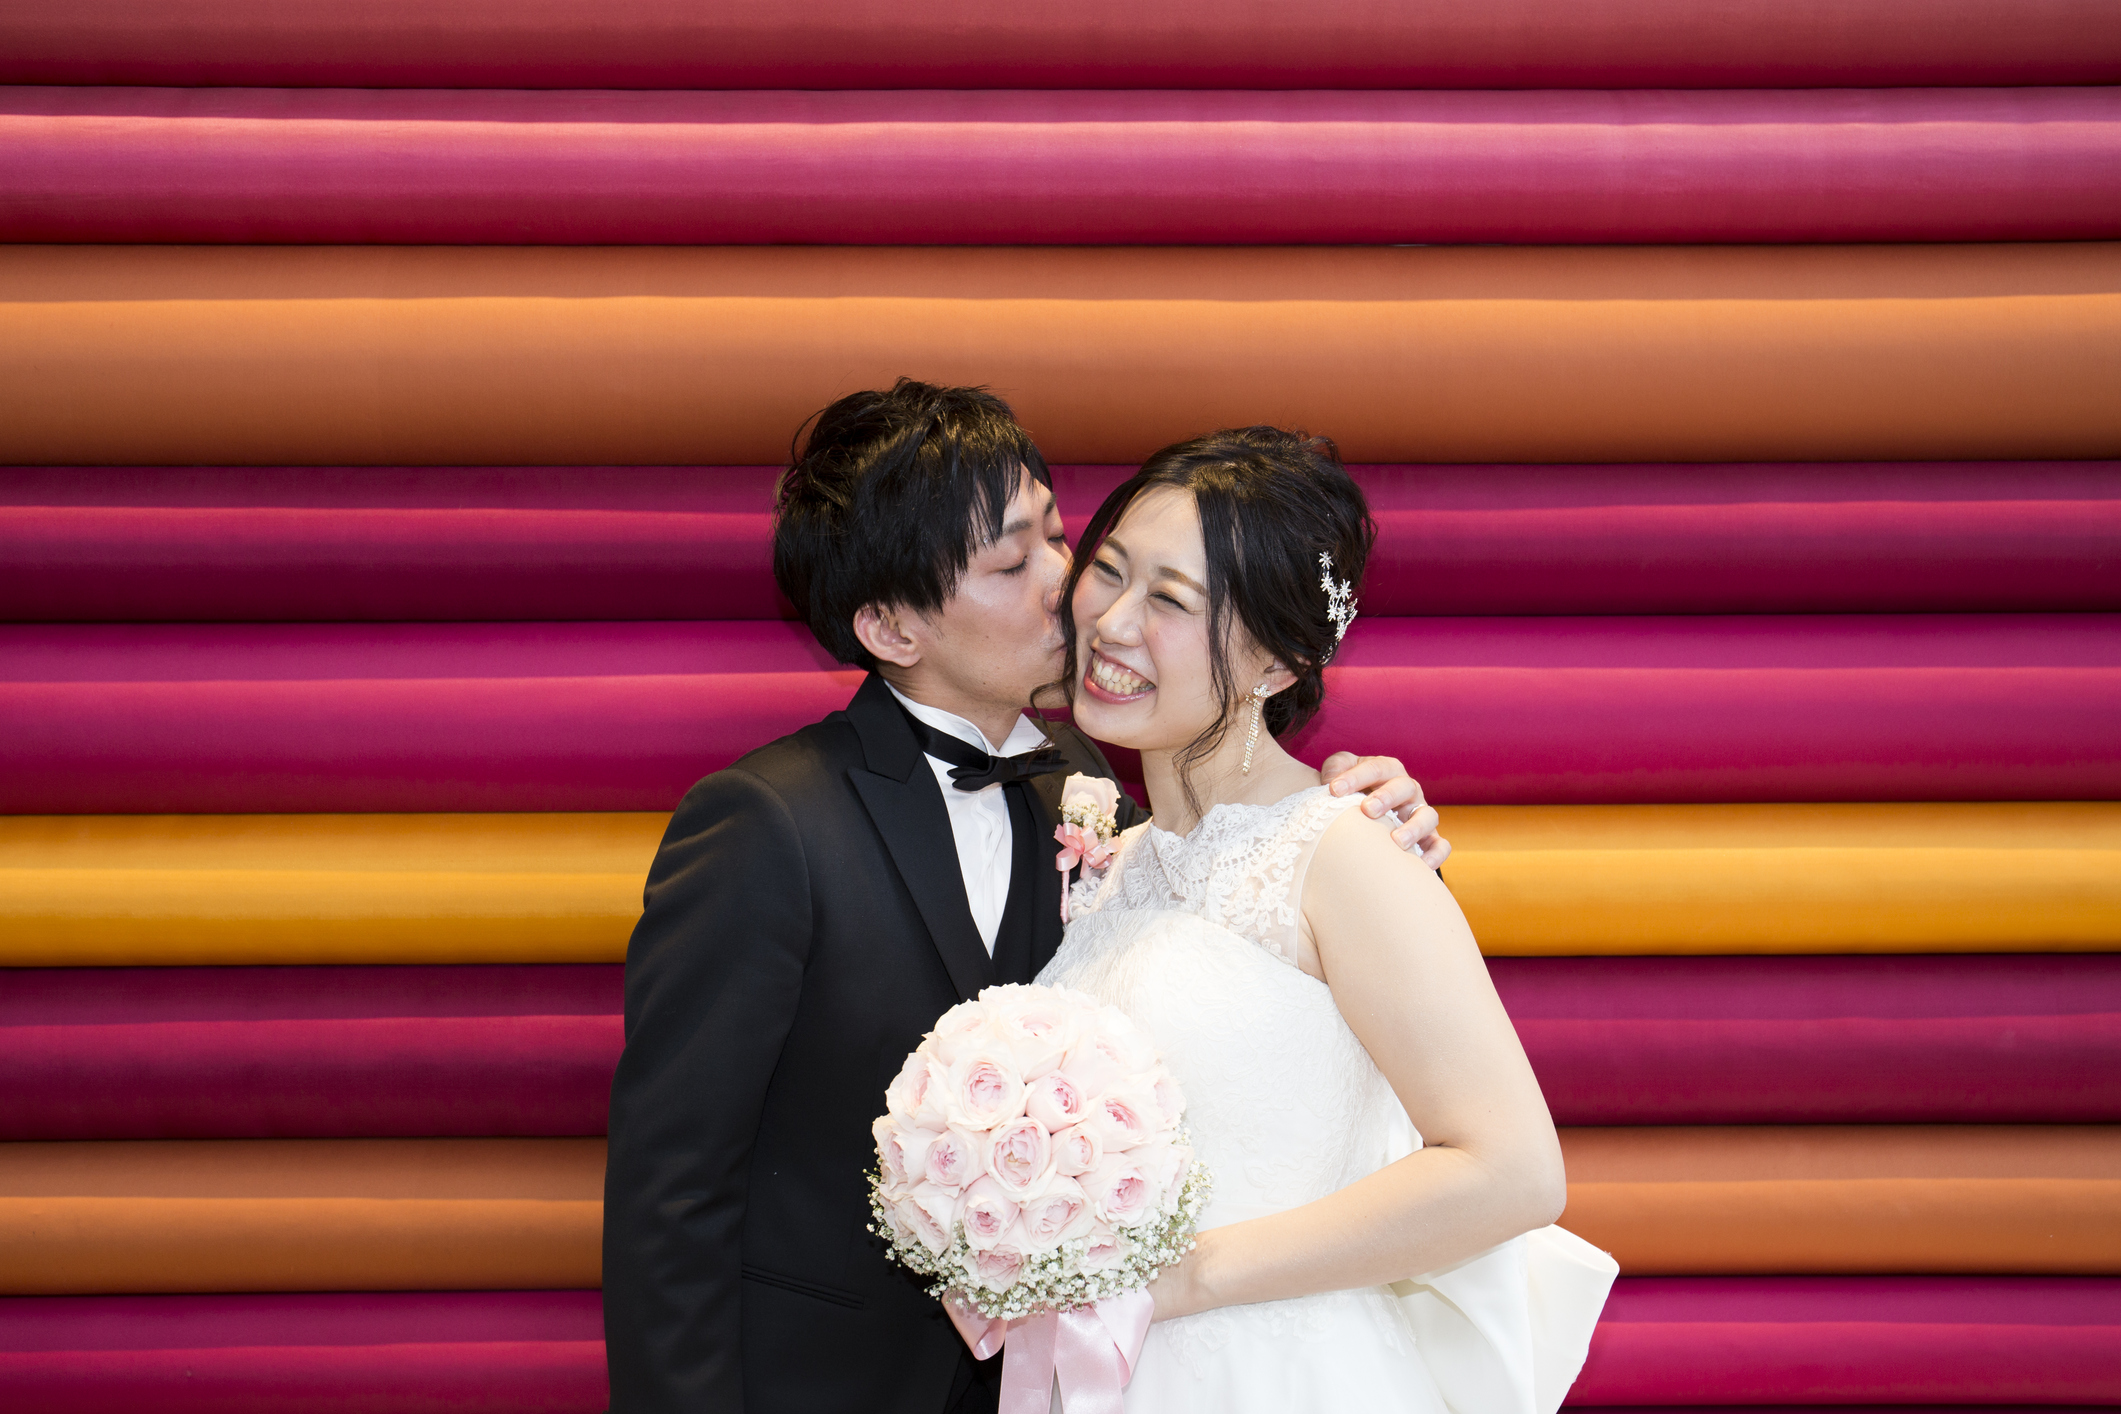 Японска целувка<br />
При нея не е толкаво от значение начина на целуване между двамата партньори, а по-скоро прегръдката. Японската целувка е целуване по устните и нищо по-особено, но нежното прегръщане и докосване е важно за японците.